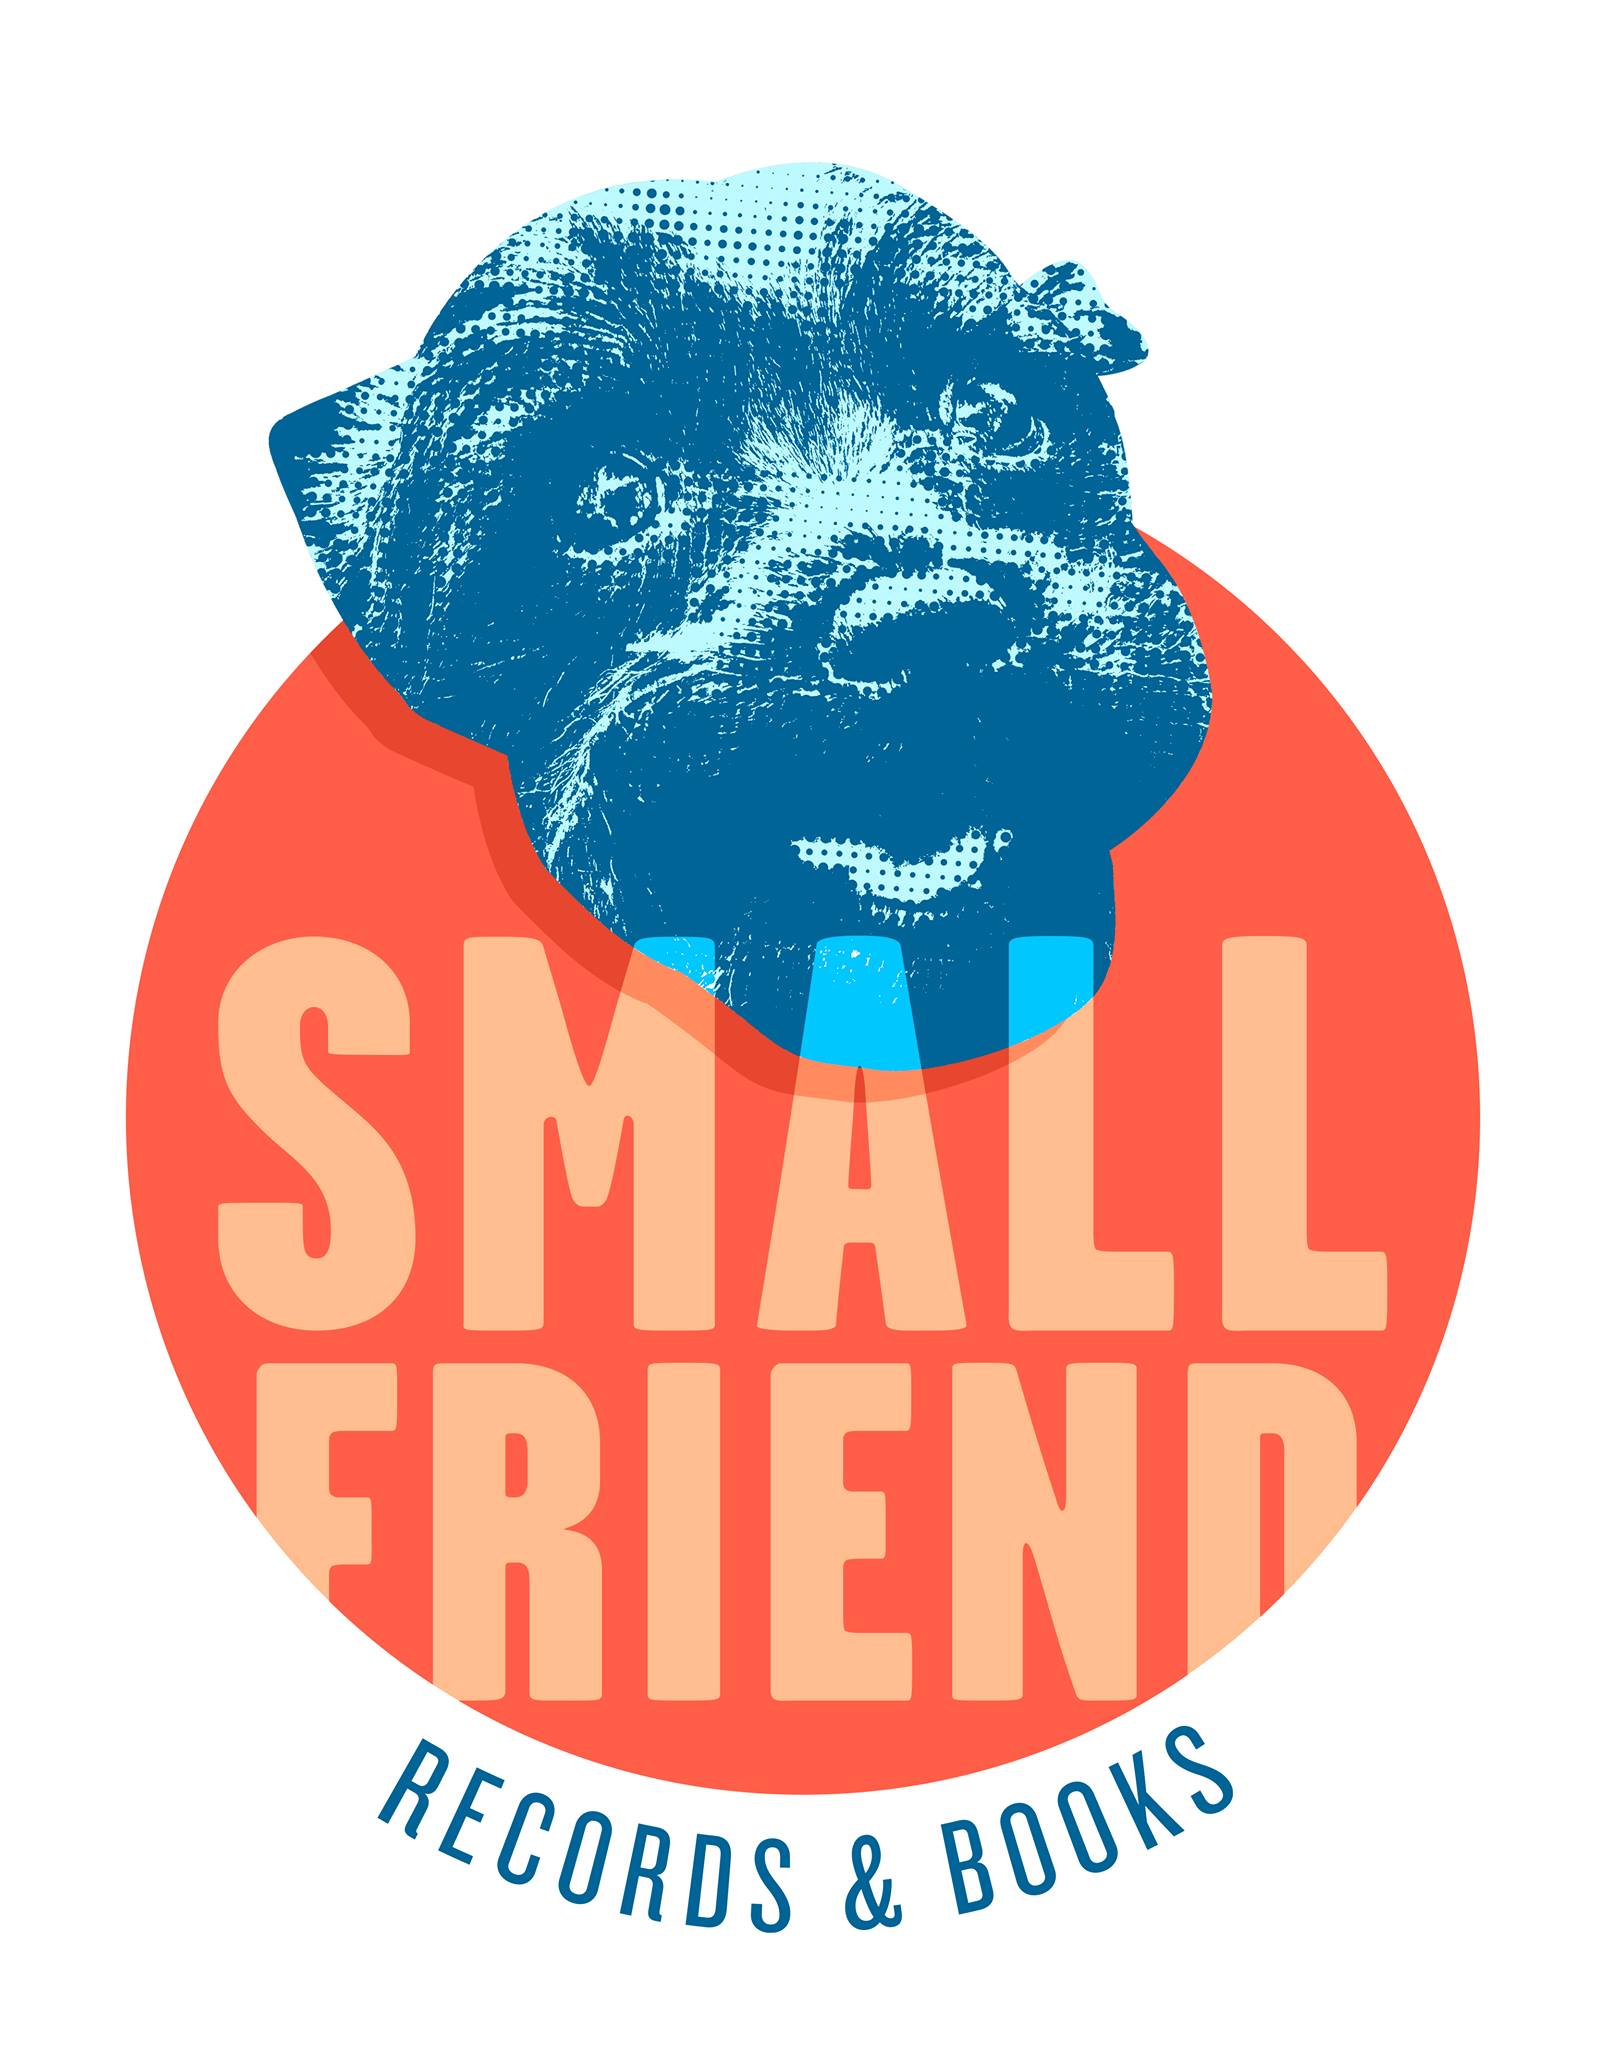 Company logo of Small Friend Records & Books